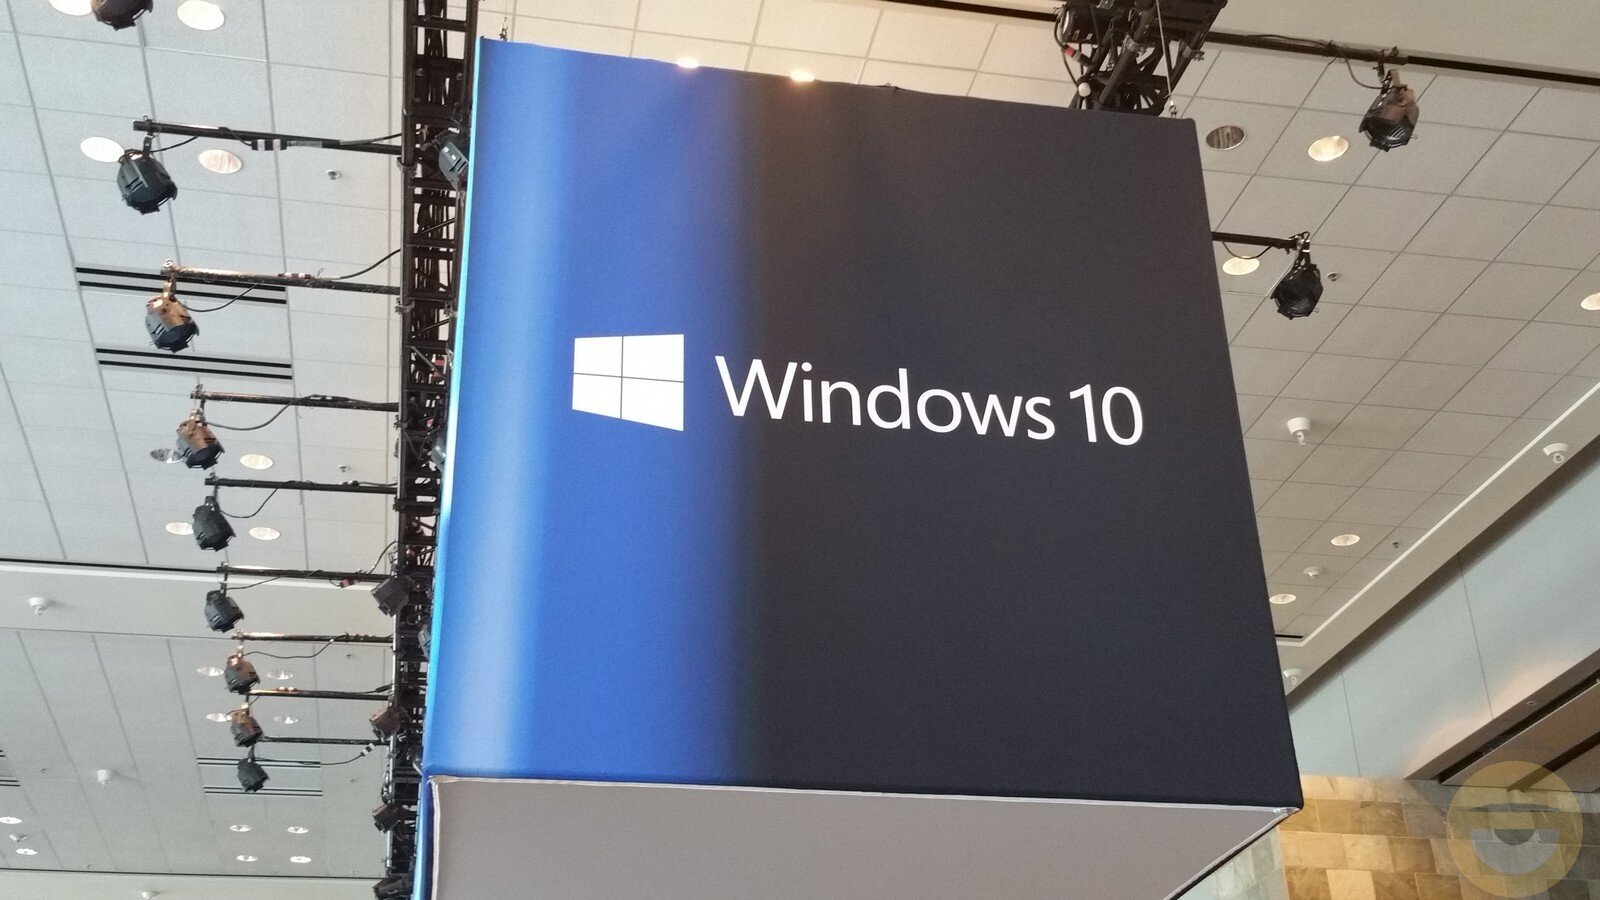 Η Microsoft θα προσφέρει επί πληρωμή ενημερώσεις ασφαλείας για τα Windows 10 για όλους, μετά το 2025